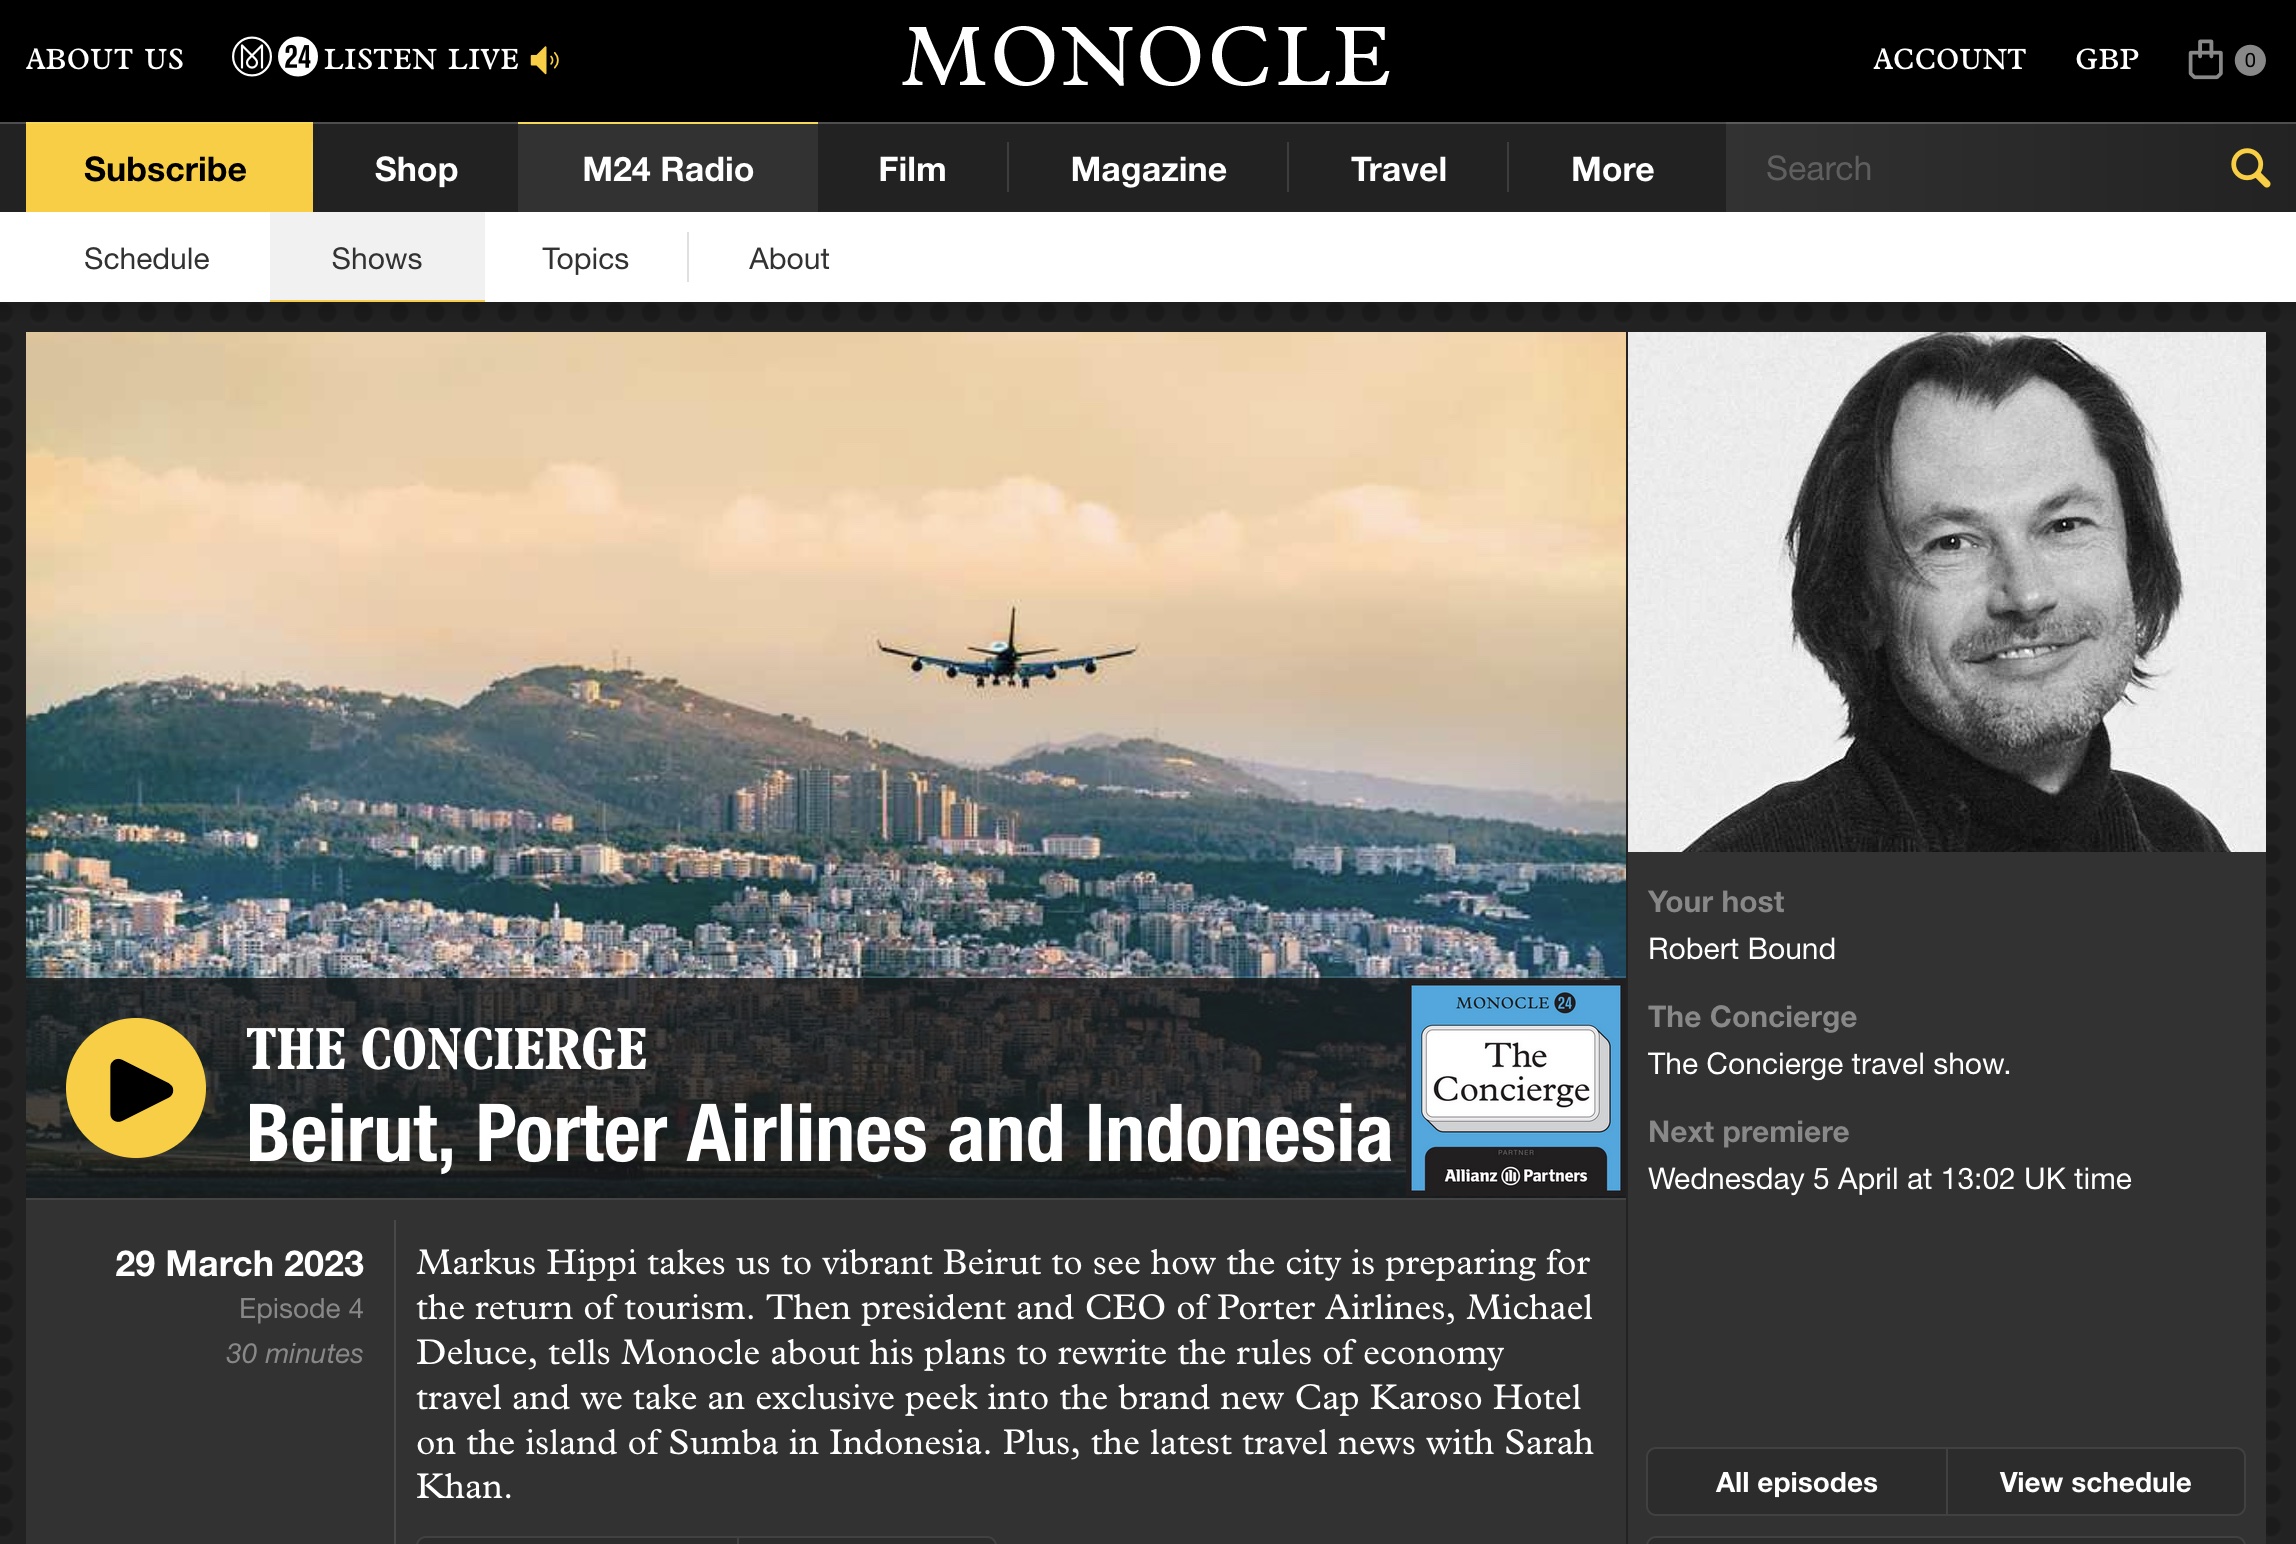 Monocle podcast: The Concierge